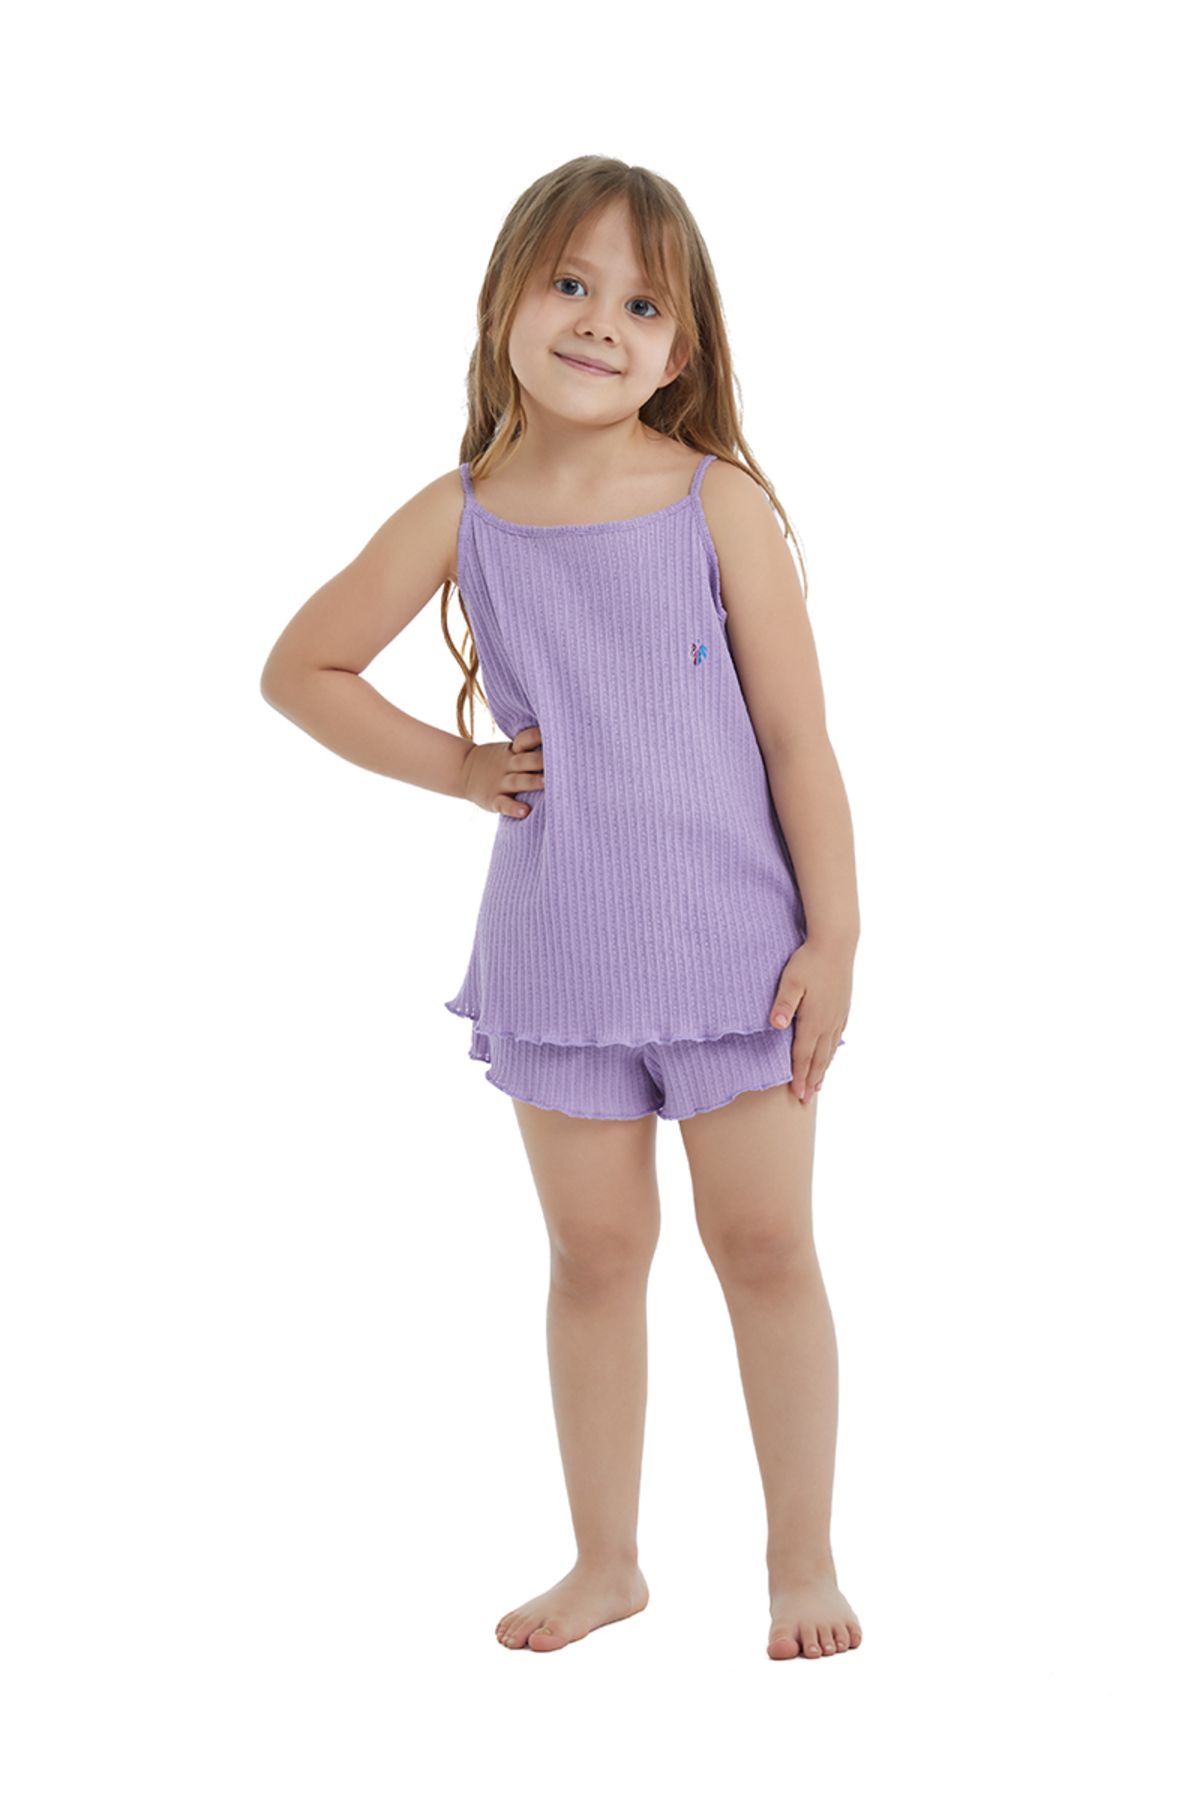 Blackspade Kız Çocuk Pijama Takımı 60441 - Mor